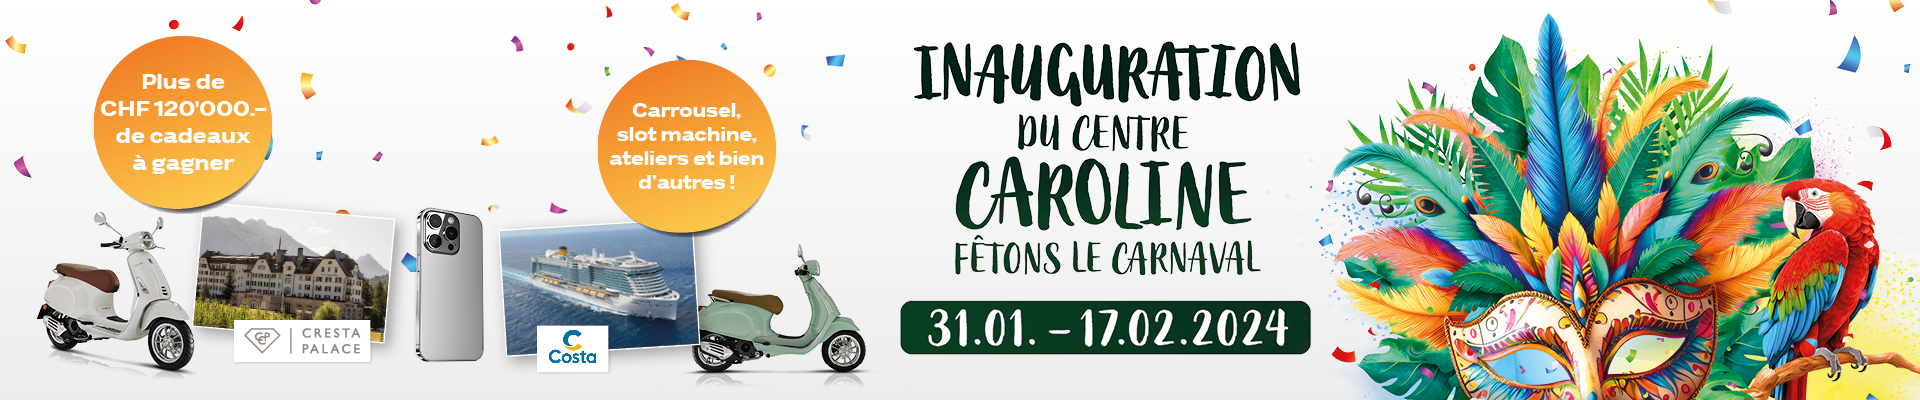 Inauguration du Centre Caroline Lausanne  Fêtons le Carnaval